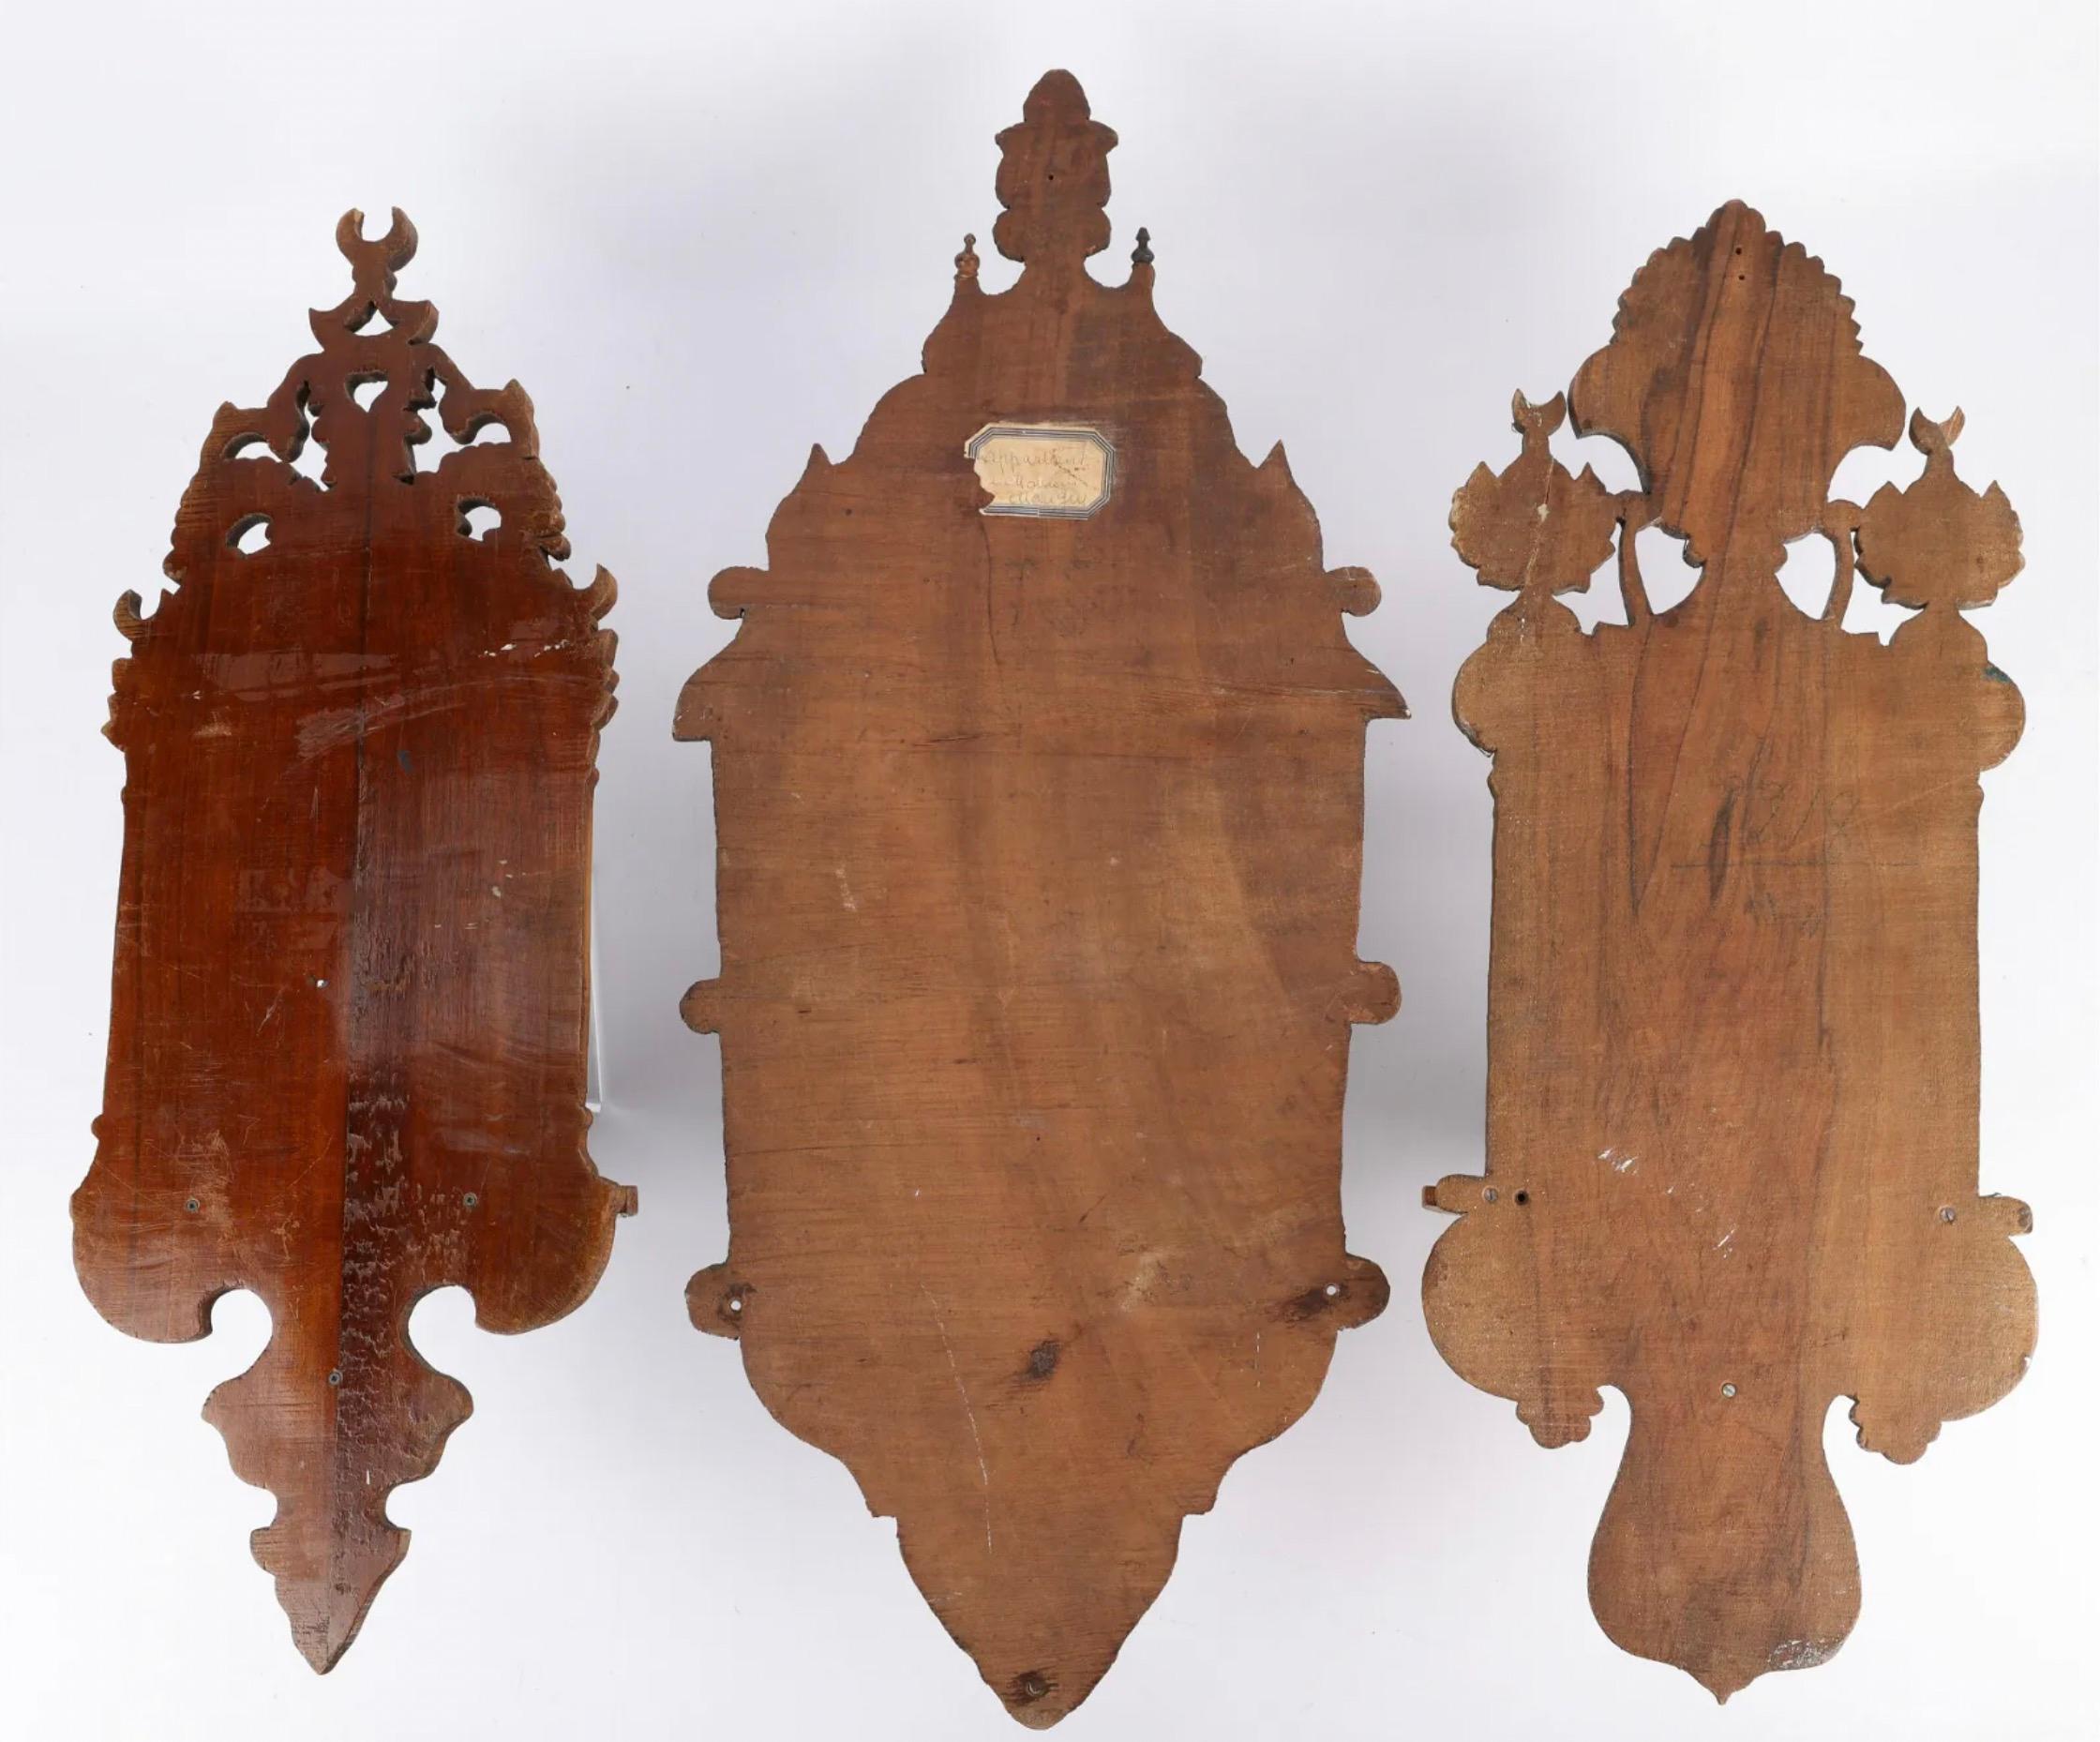 Gruppe von drei syrischen Wandregalen aus Holz mit Perlmuttintarsien. In das kunstvoll geschnitzte Holz sind Intarsien aus Perlmutt eingelegt, die mit der Intarsienmethode hergestellt wurden.
Provenienz: Aus dem Nachlass von Horst Rechelbacher,